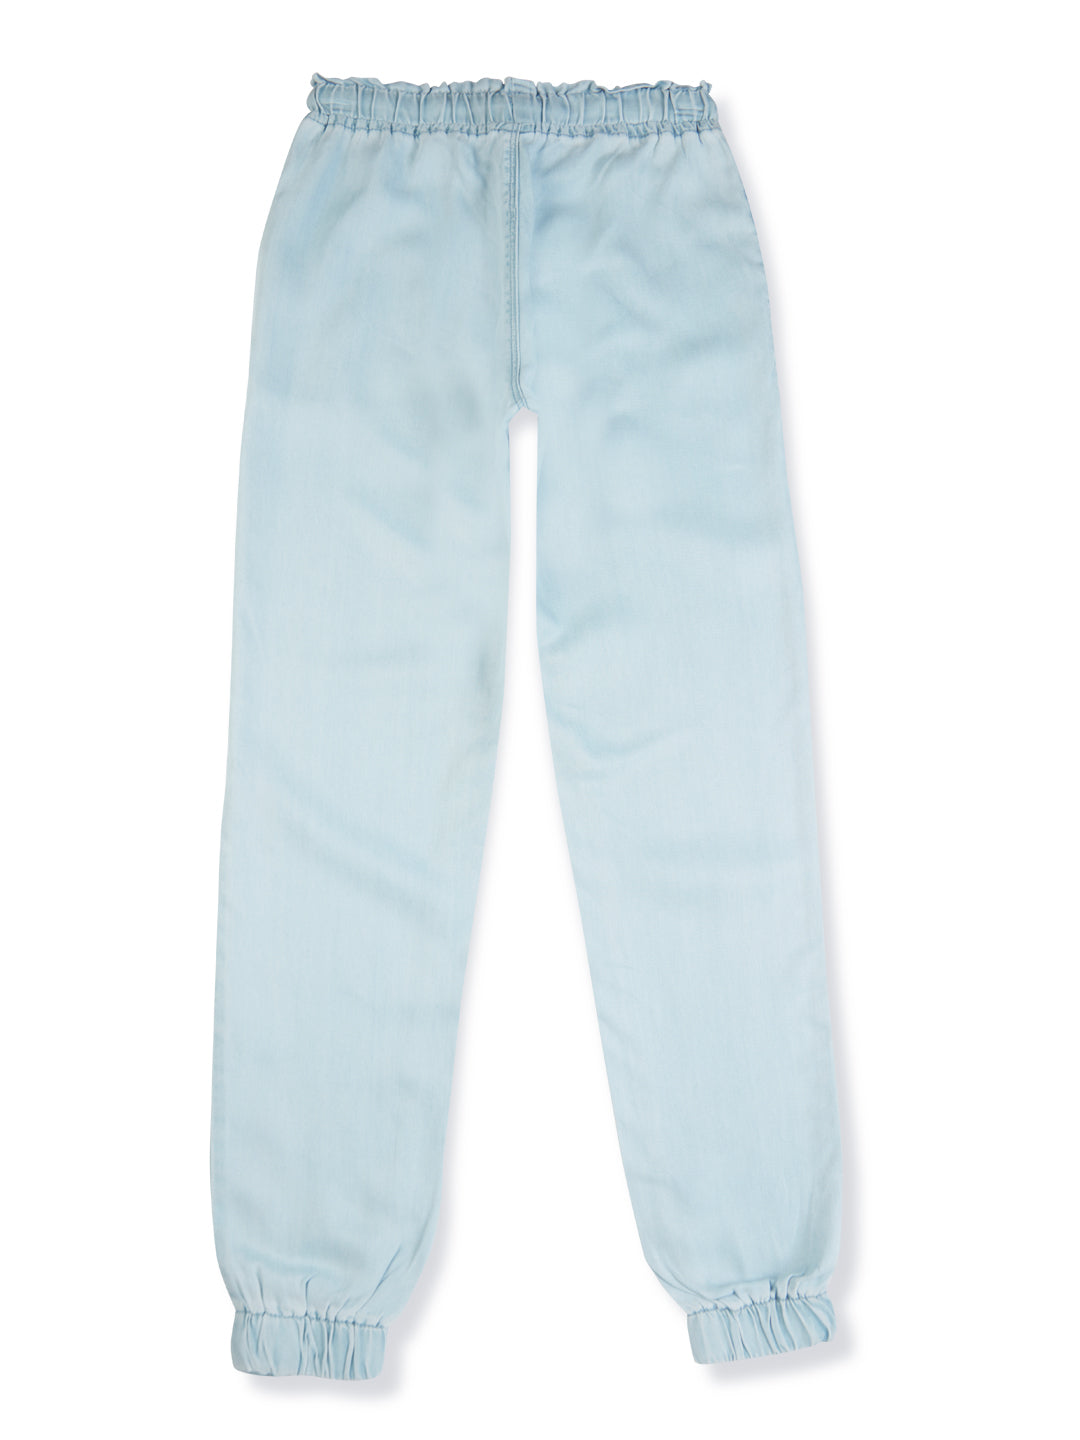 Girls Blue Solid Denim Jeans